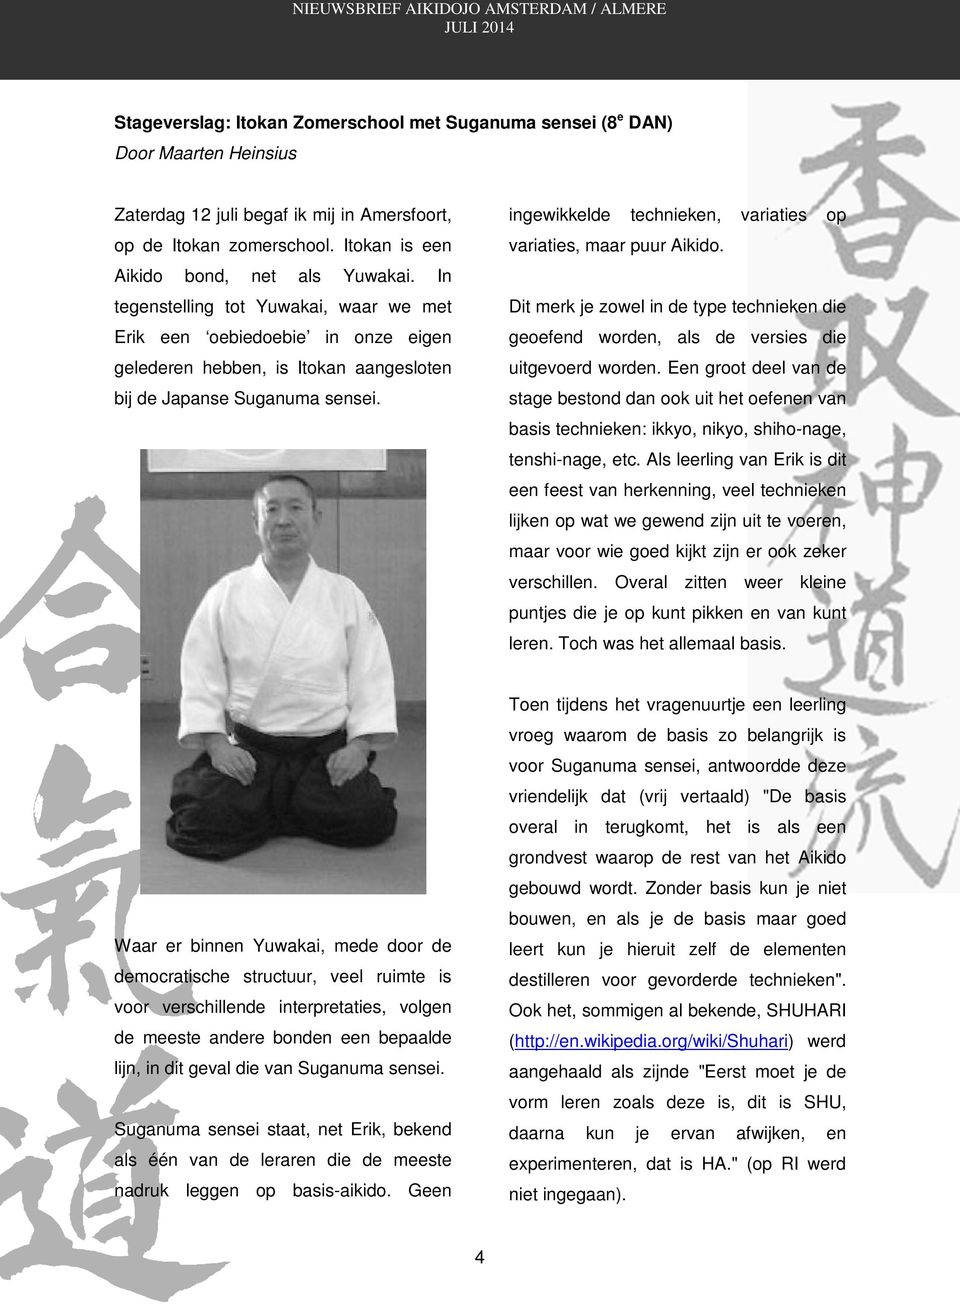 ingewikkelde technieken, variaties op variaties, maar puur Aikido. Dit merk je zowel in de type technieken die geoefend worden, als de versies die uitgevoerd worden.